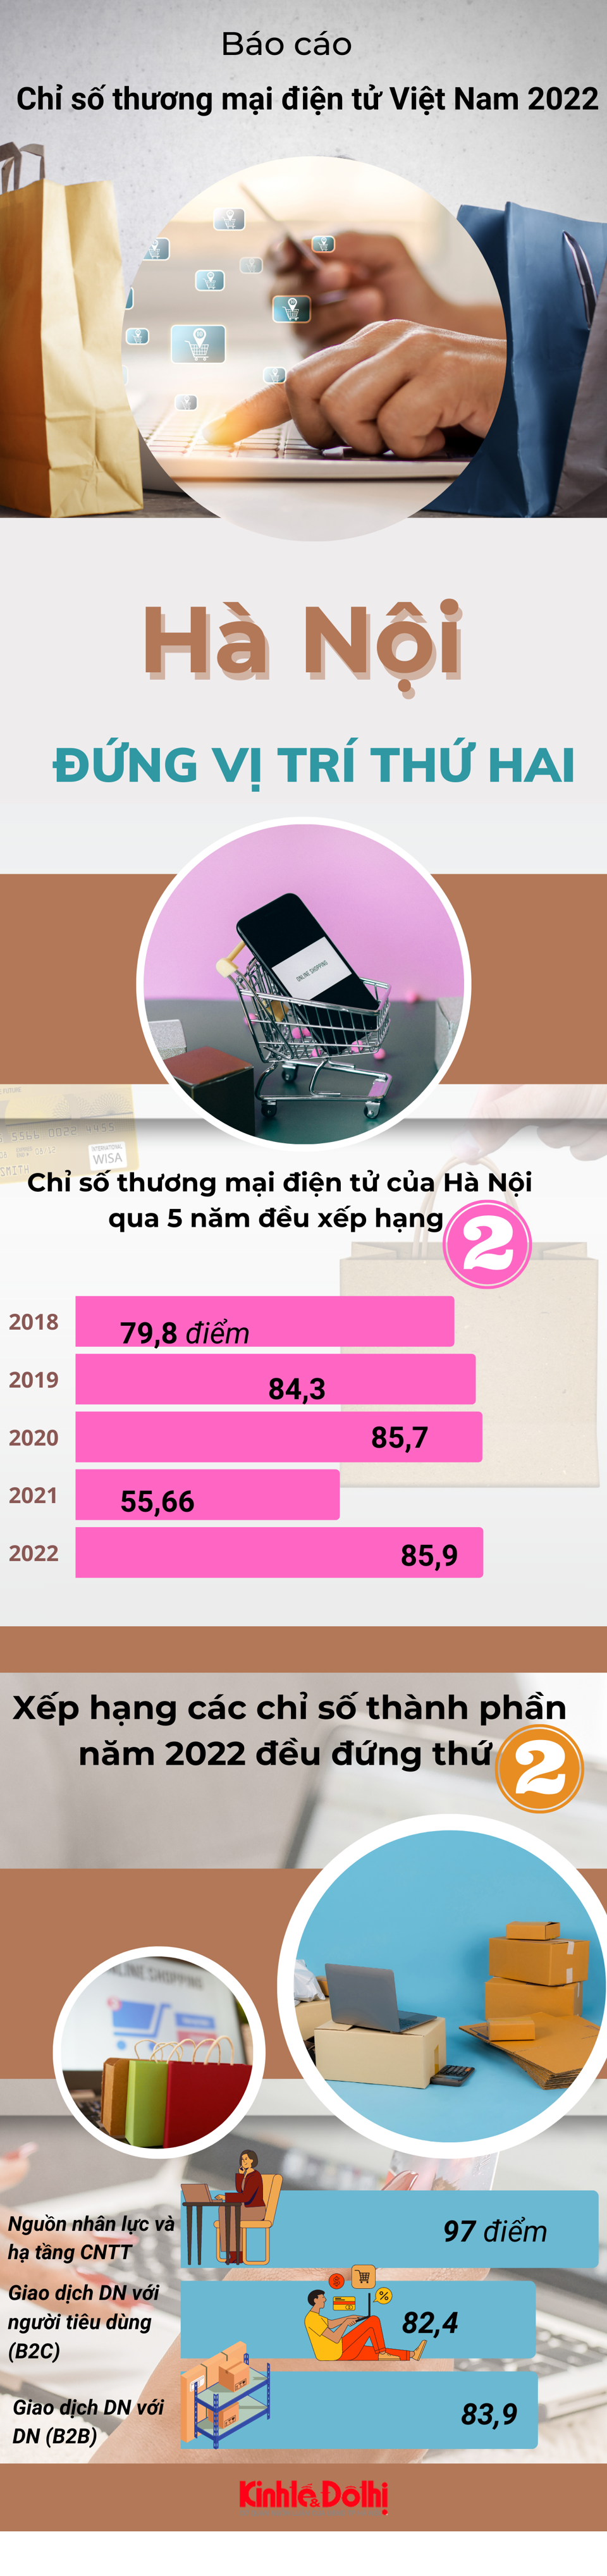 Chỉ số thương mại điện tử Việt Nam 2022: Hà Nội giữ vị trí Á quân - Ảnh 1